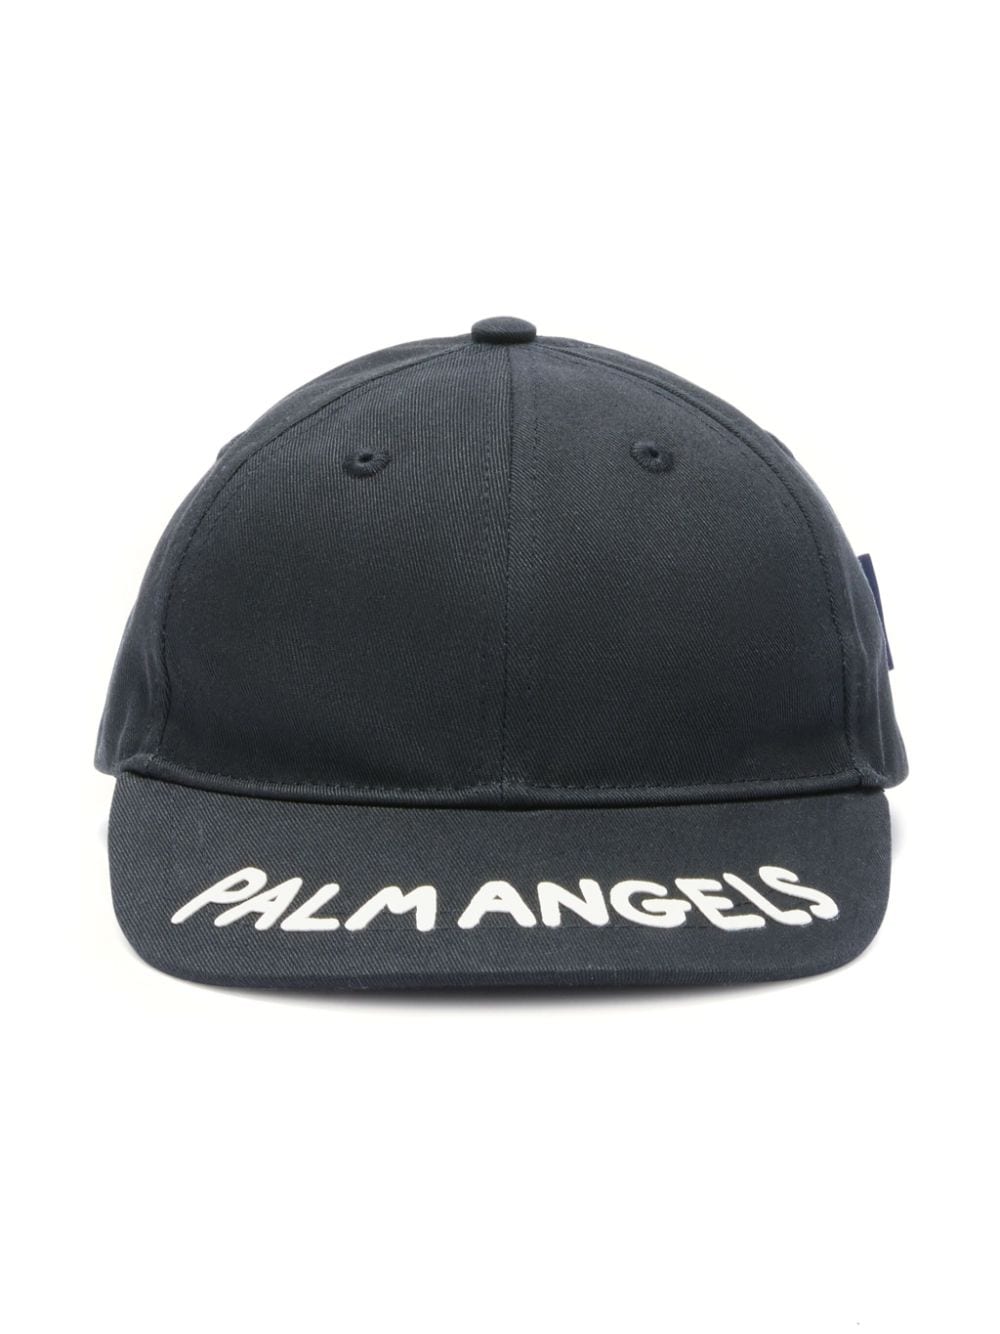 Palm Angels Kids cotton baseball cap - Black von Palm Angels Kids